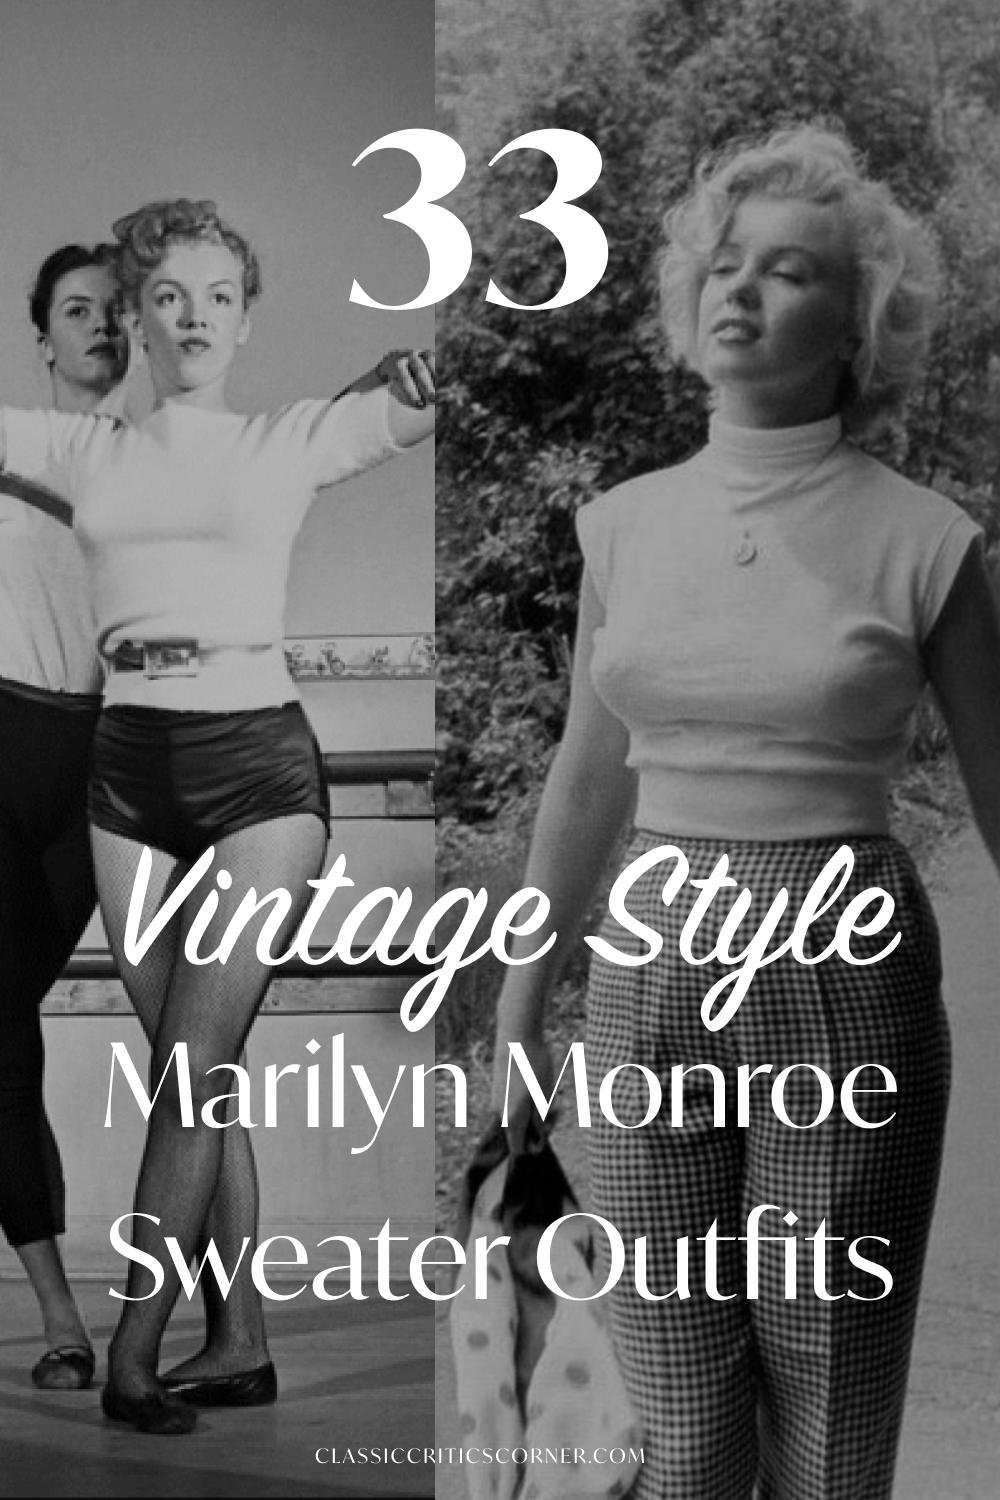 Elegant Marilyn Monroe (1953)